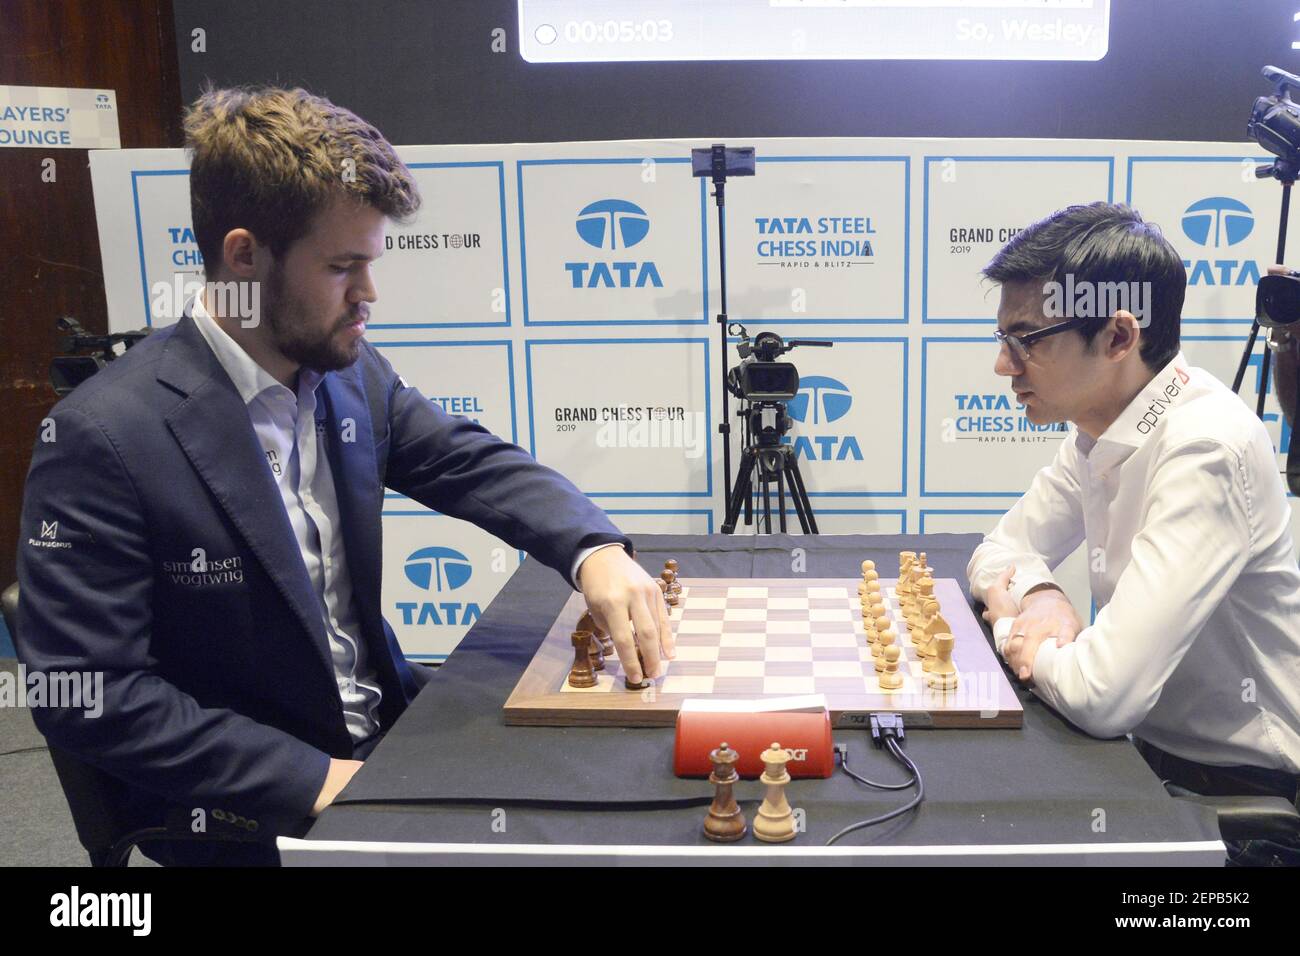 EXCITING STREET CHESS Magnus Carlsen vs Anish Giri 